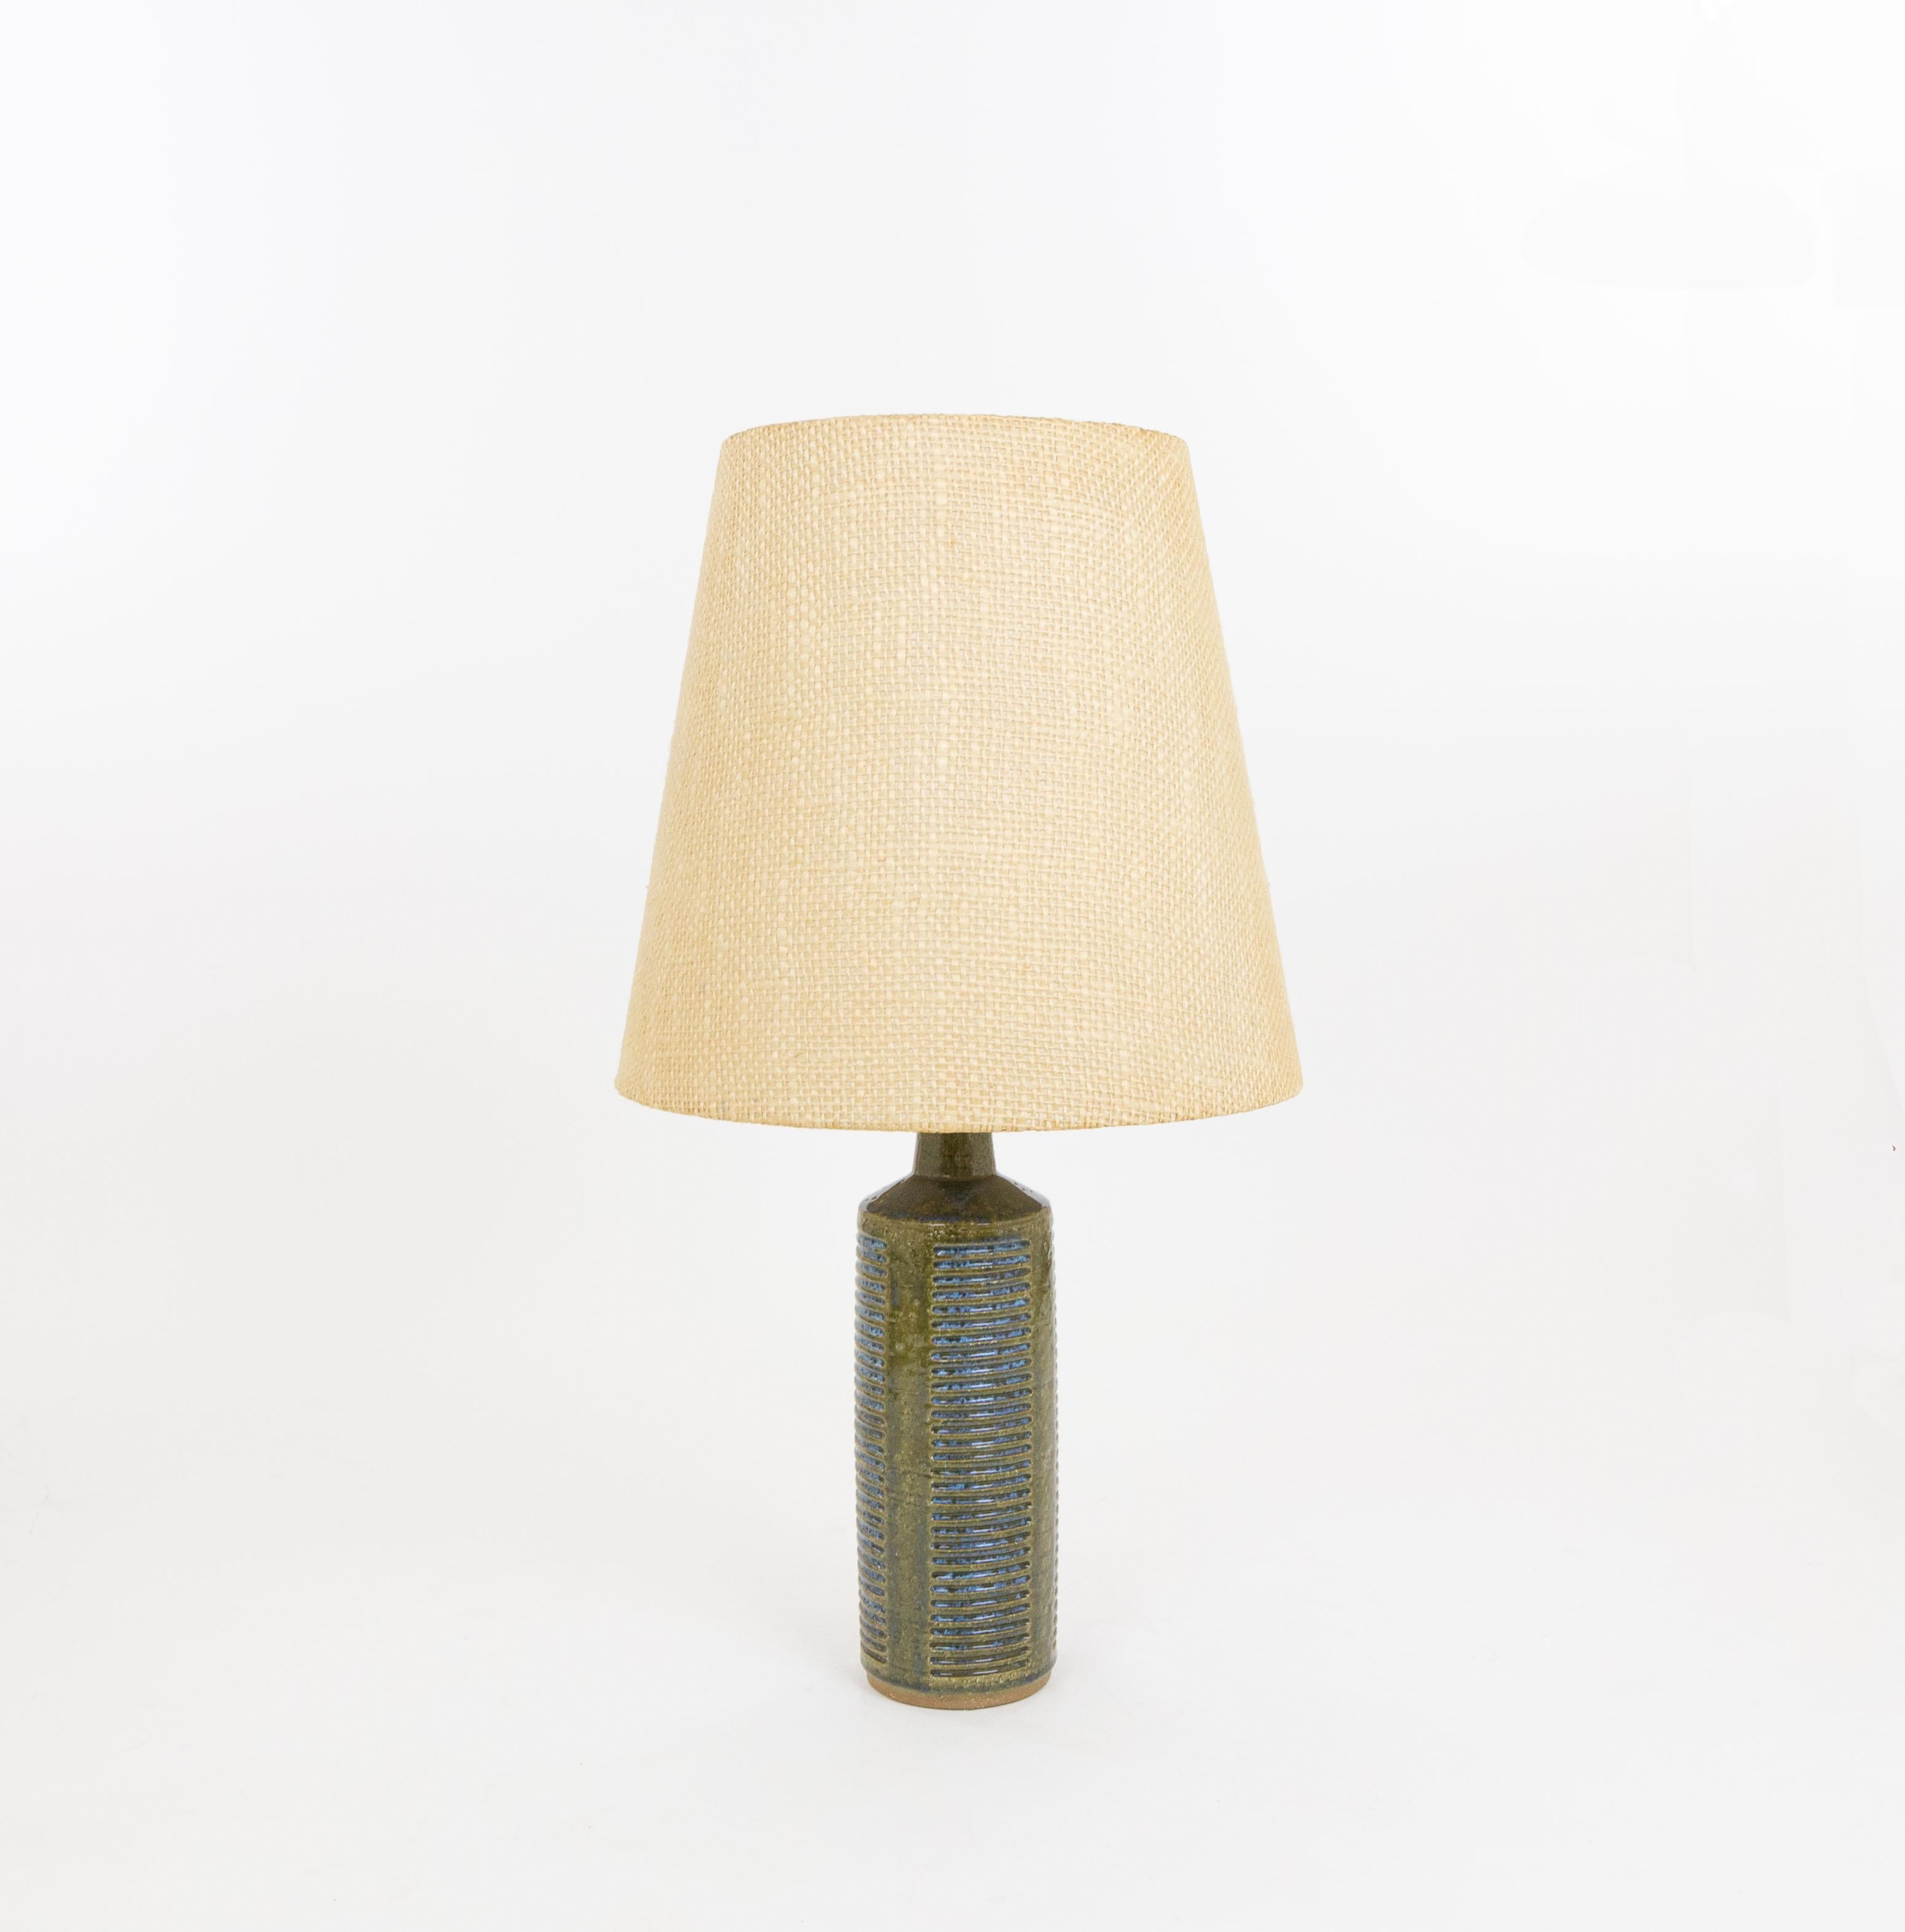 Tischleuchte Modell DL/27, hergestellt von Annelise und Per Linnemann-Schmidt für Palshus in den 1960er Jahren. Die Farbe des handgefertigten, verzierten Sockels ist Olivgrün und Blau. Es hat beeindruckende Muster.

Die Lampe wird mit der originalen